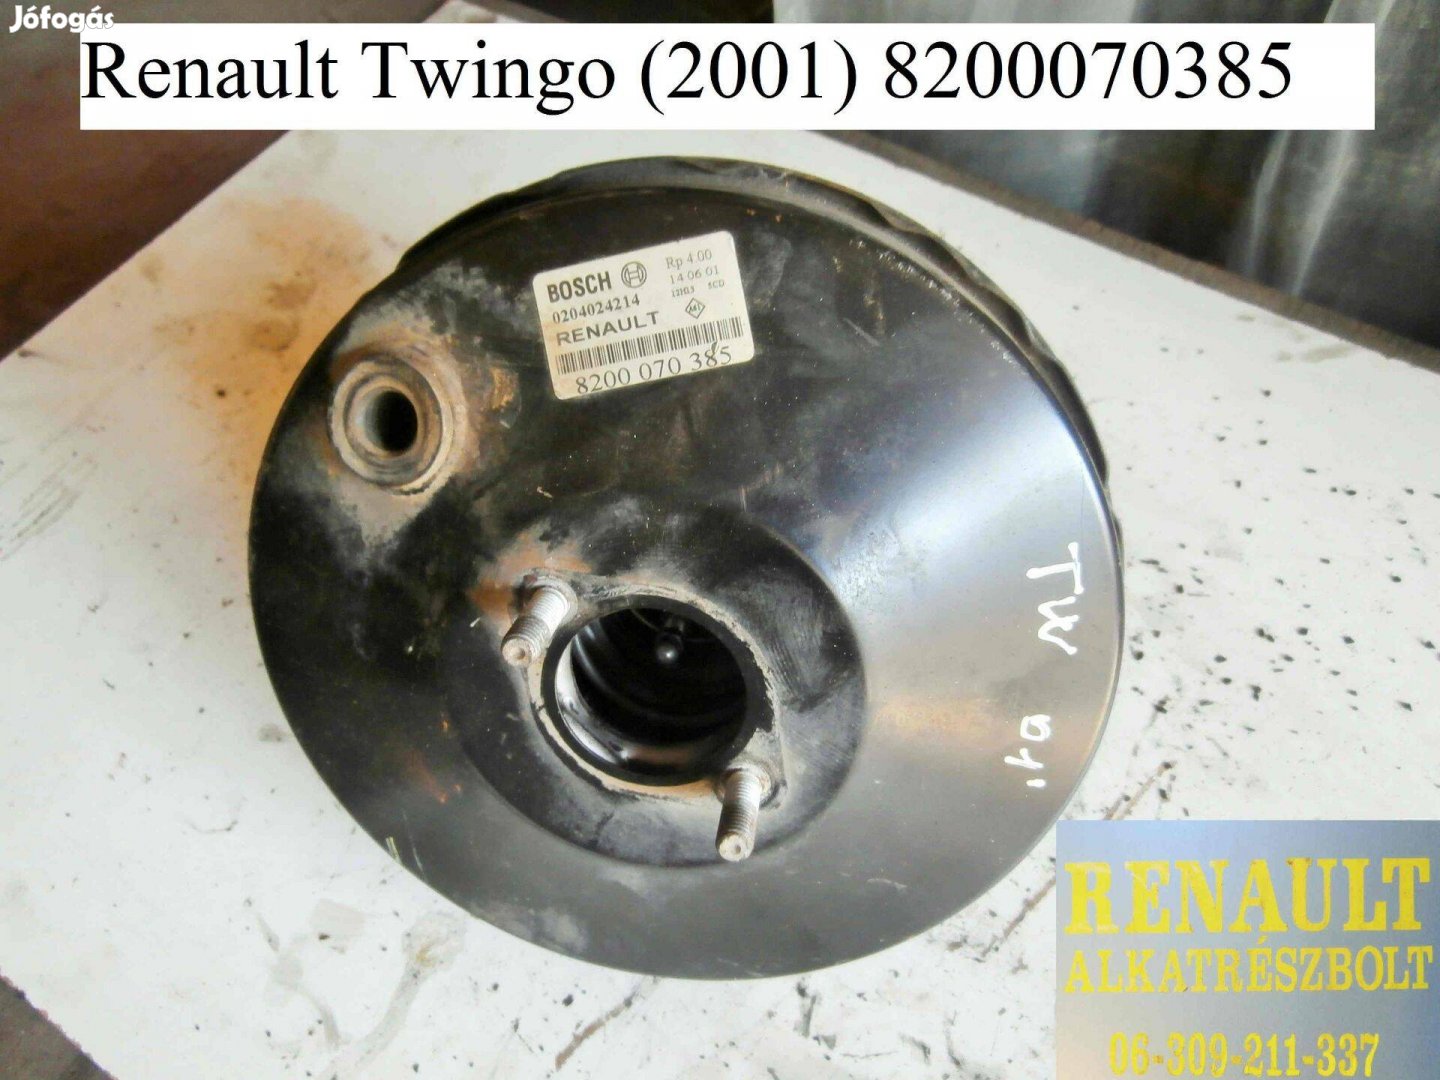 Renault Twingo 2001 8200070385 Fék-szervódob